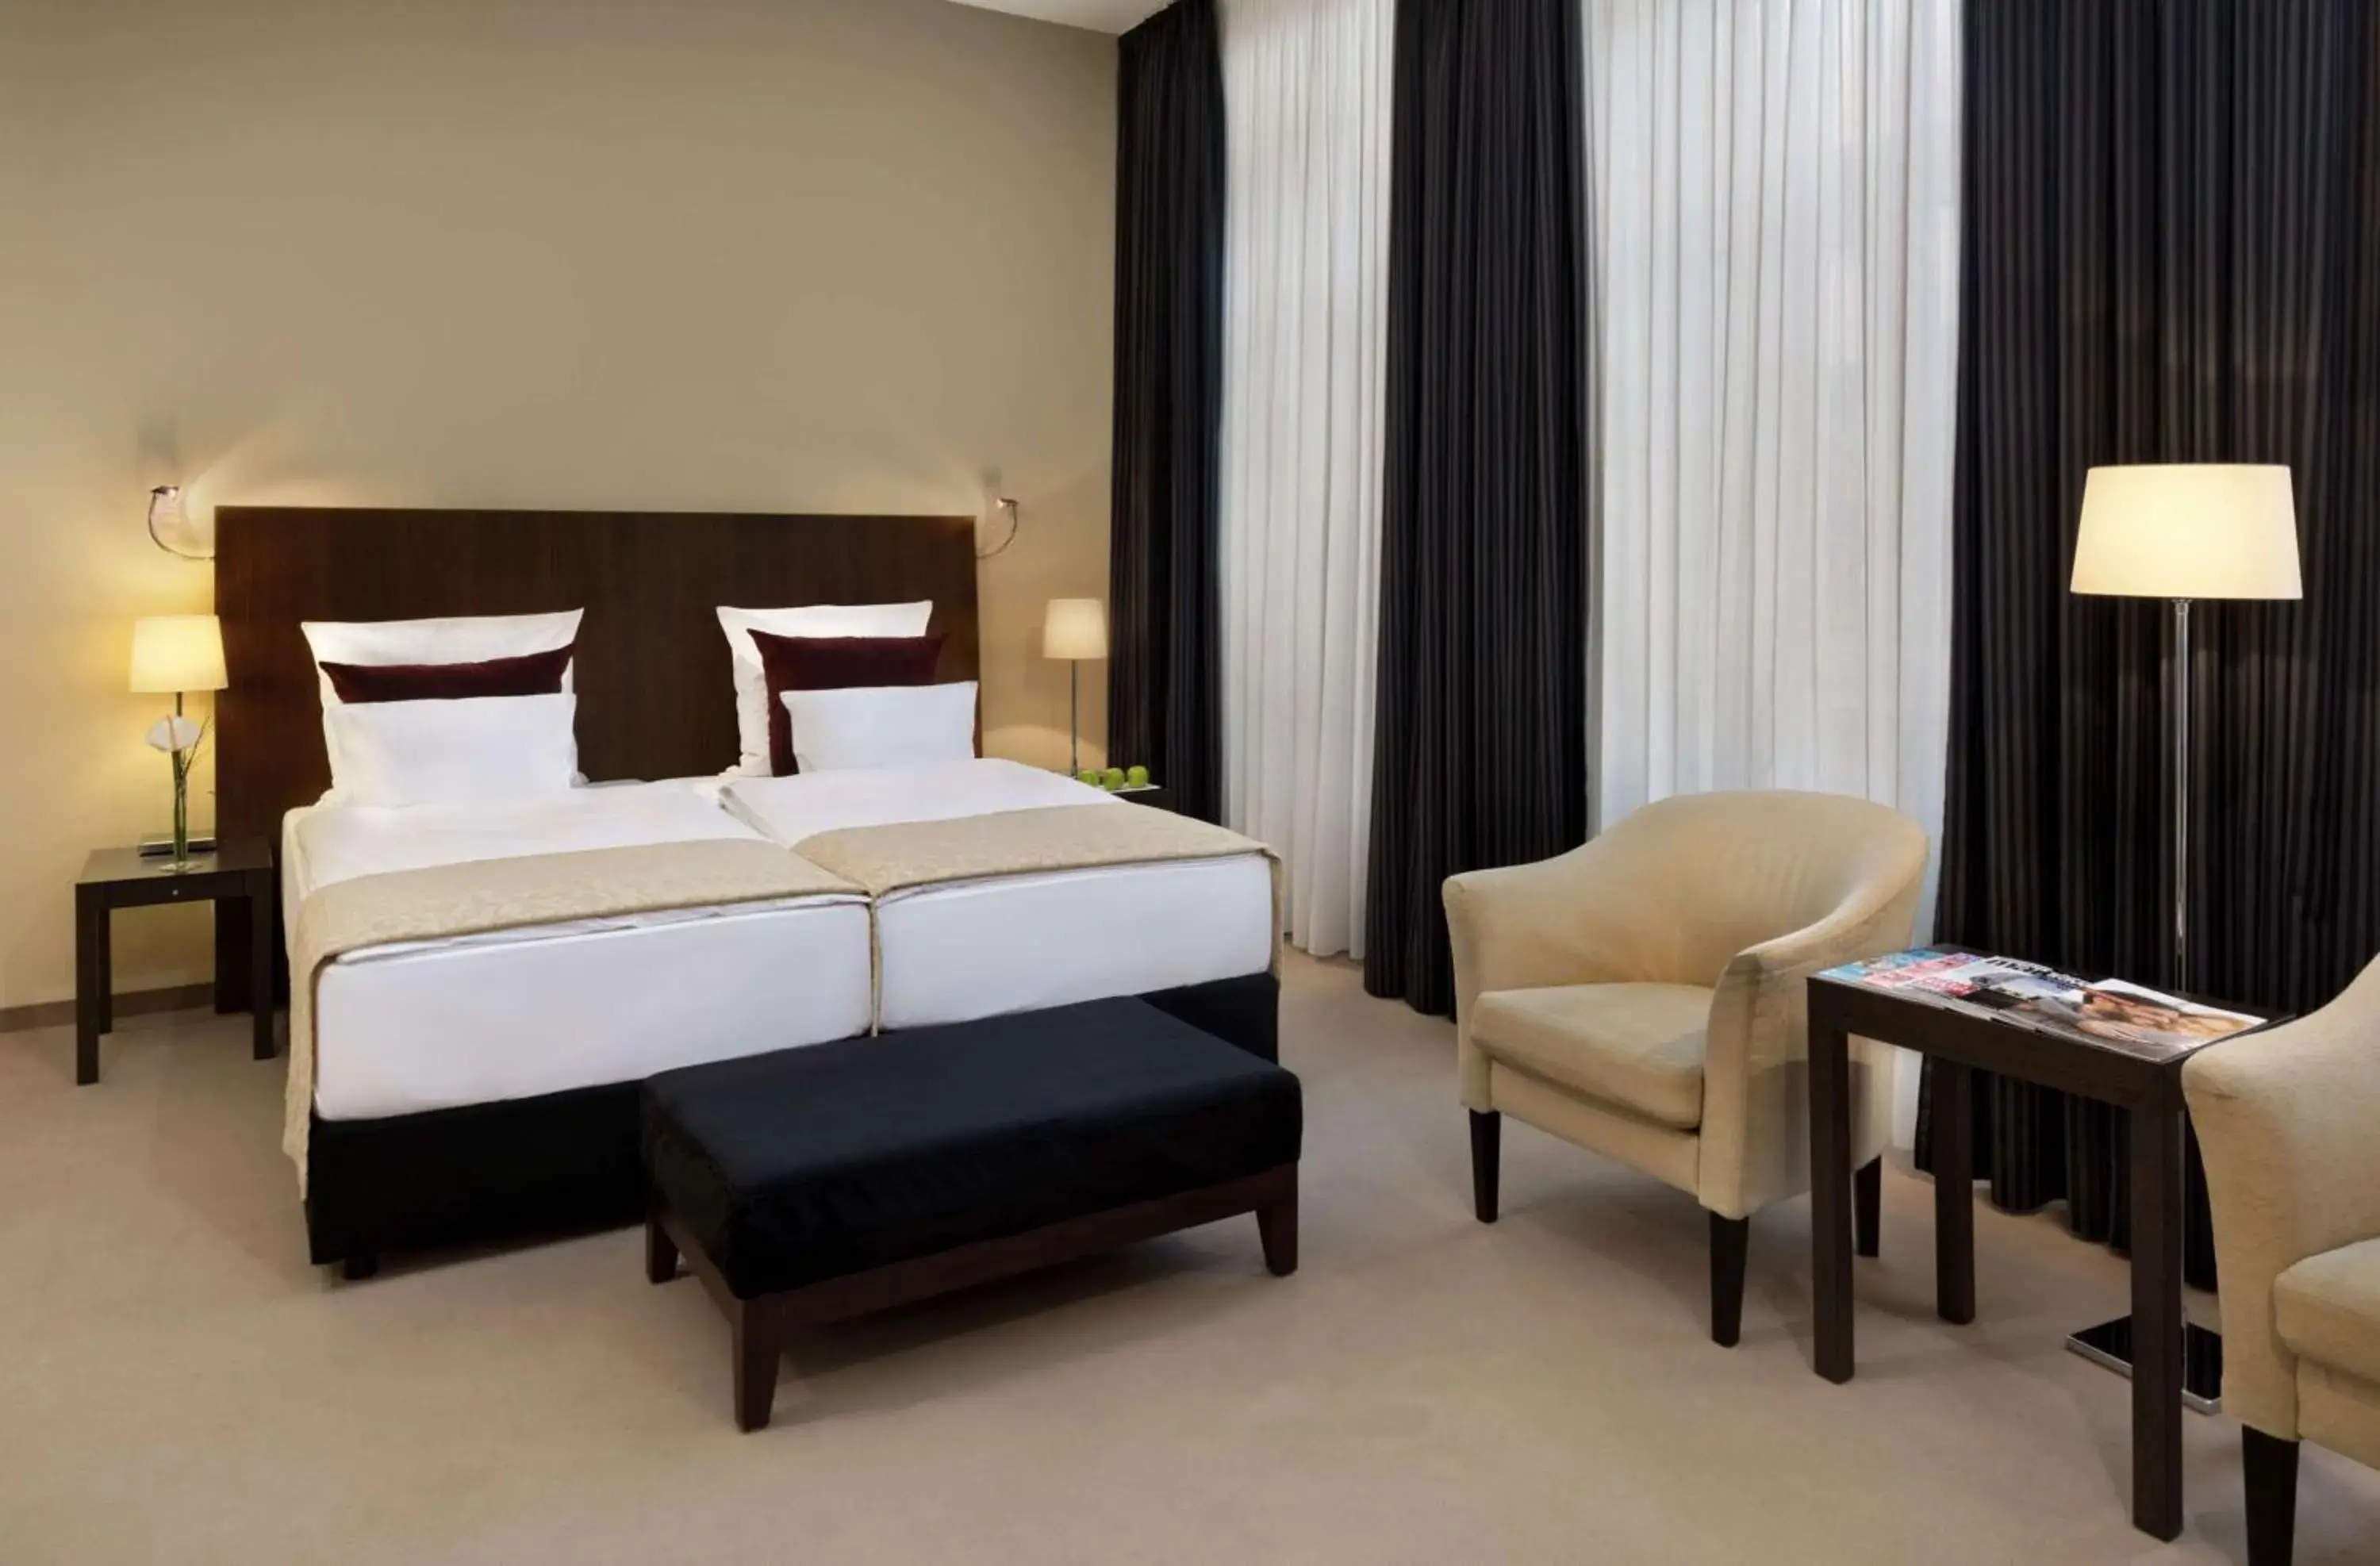 Bed in Metropolitan Hotel by Flemings